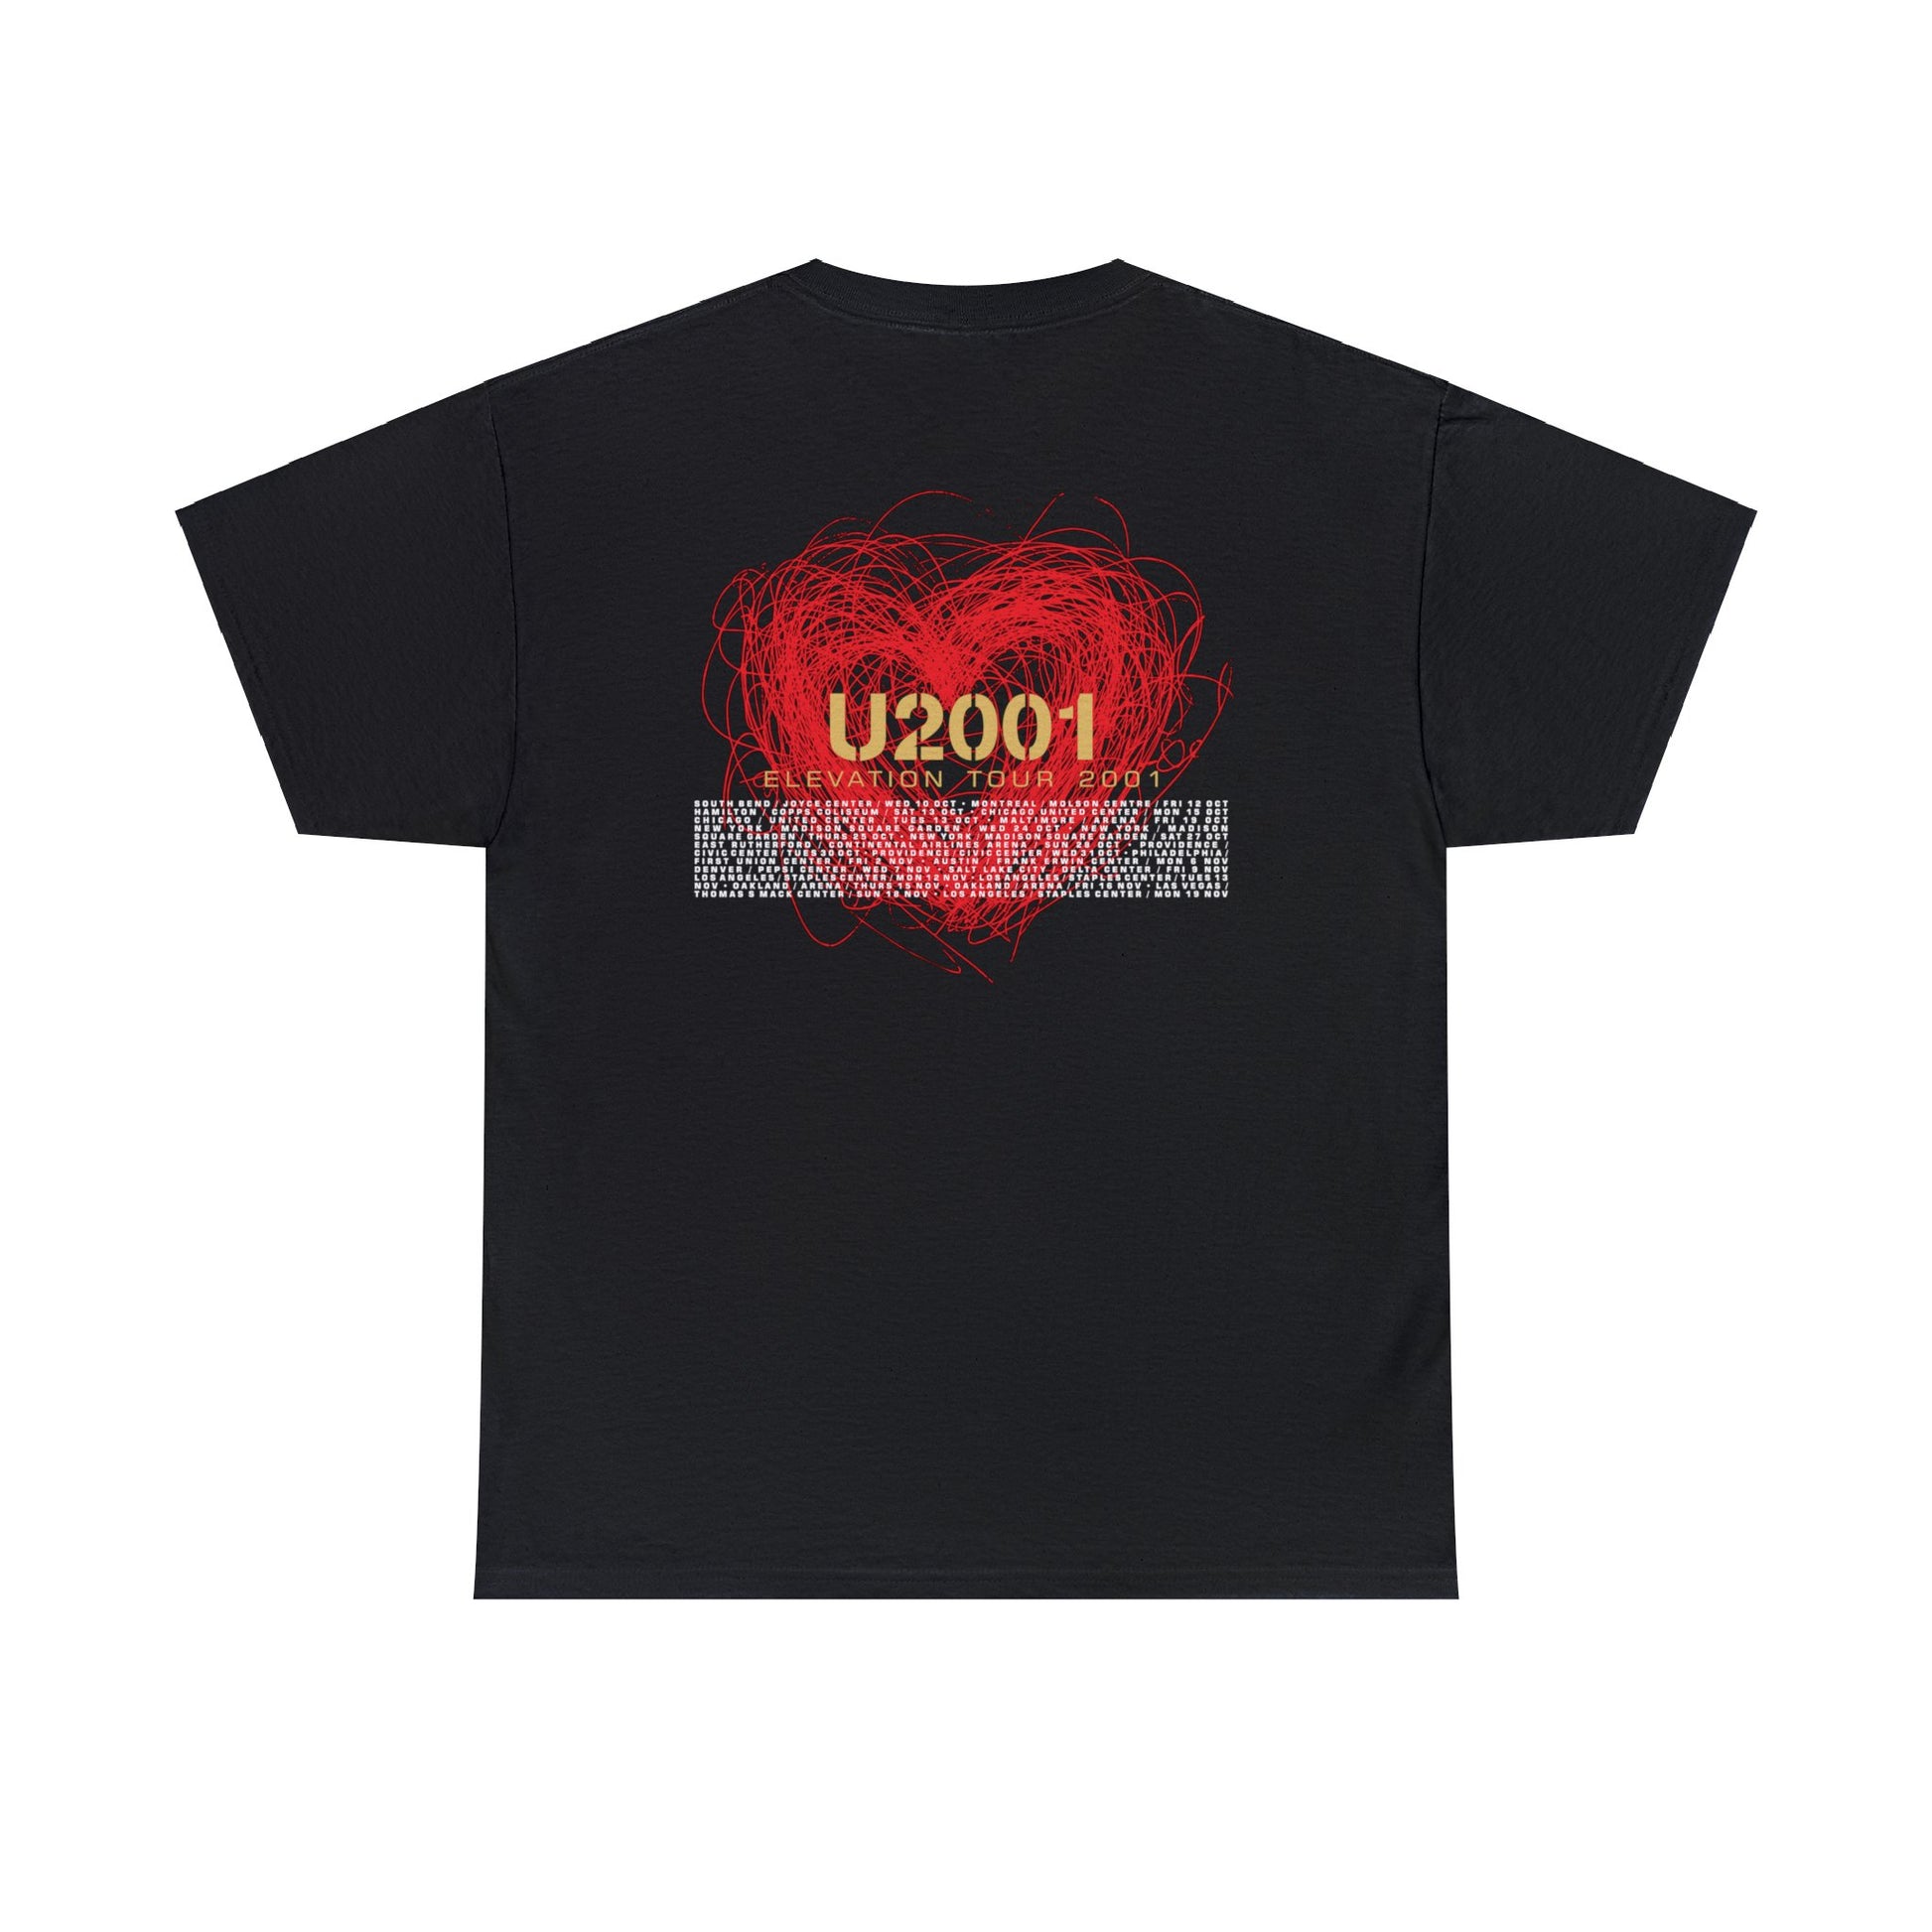 U2 Elevation Tour 2001 T-shirt for Sale